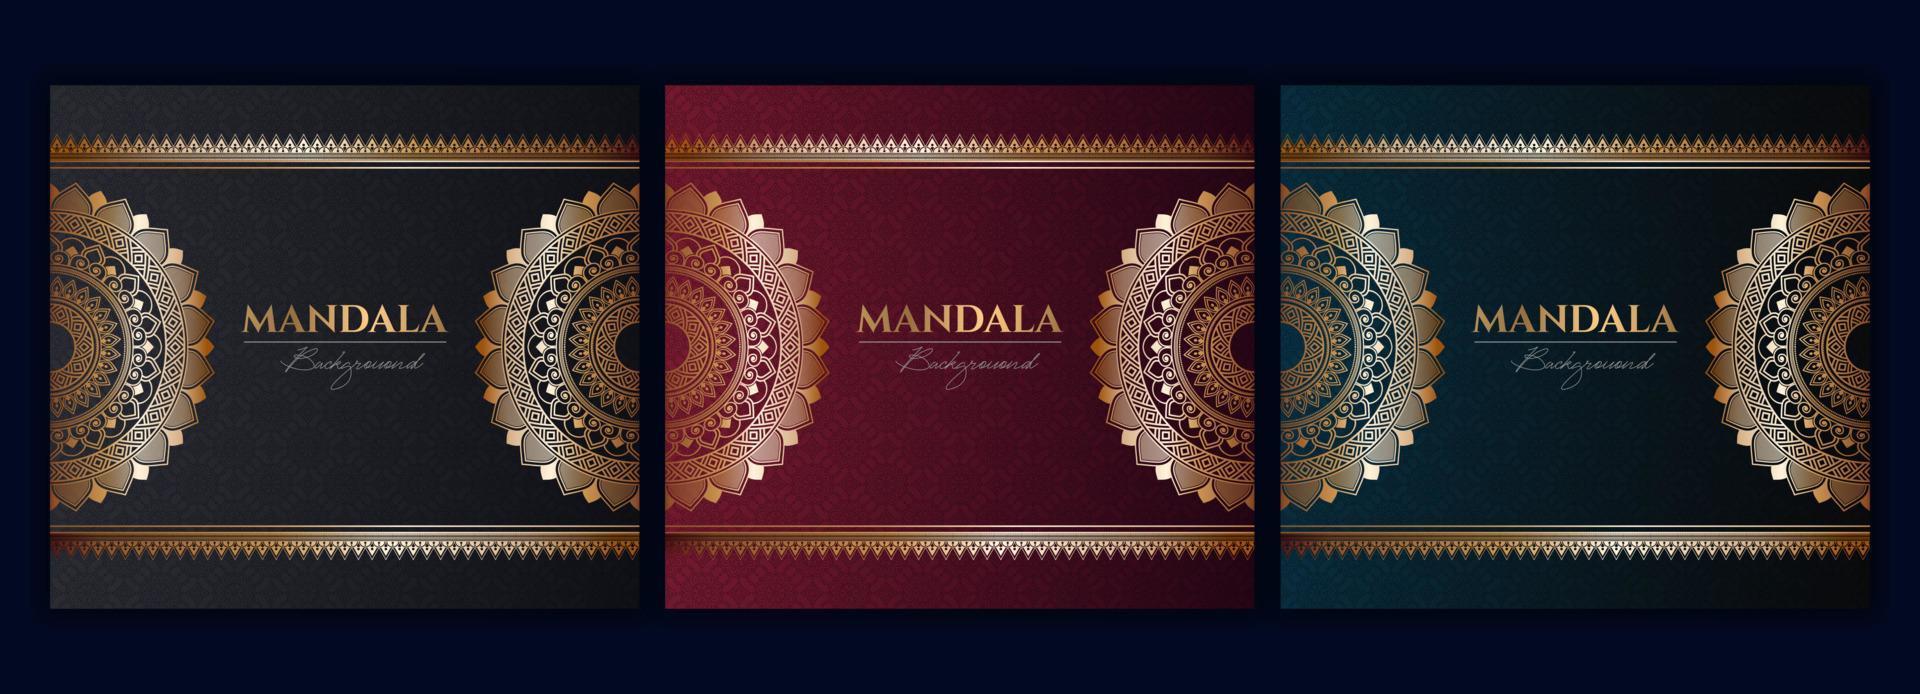 uppsättning av abstrakt guld lyx mandala bakgrund vektor mall, cirkulär dekorativ arabesk mönster för affisch, omslag, broschyr, flygblad. röd, grön, blå bakgrund med etnisk blommig mandala element